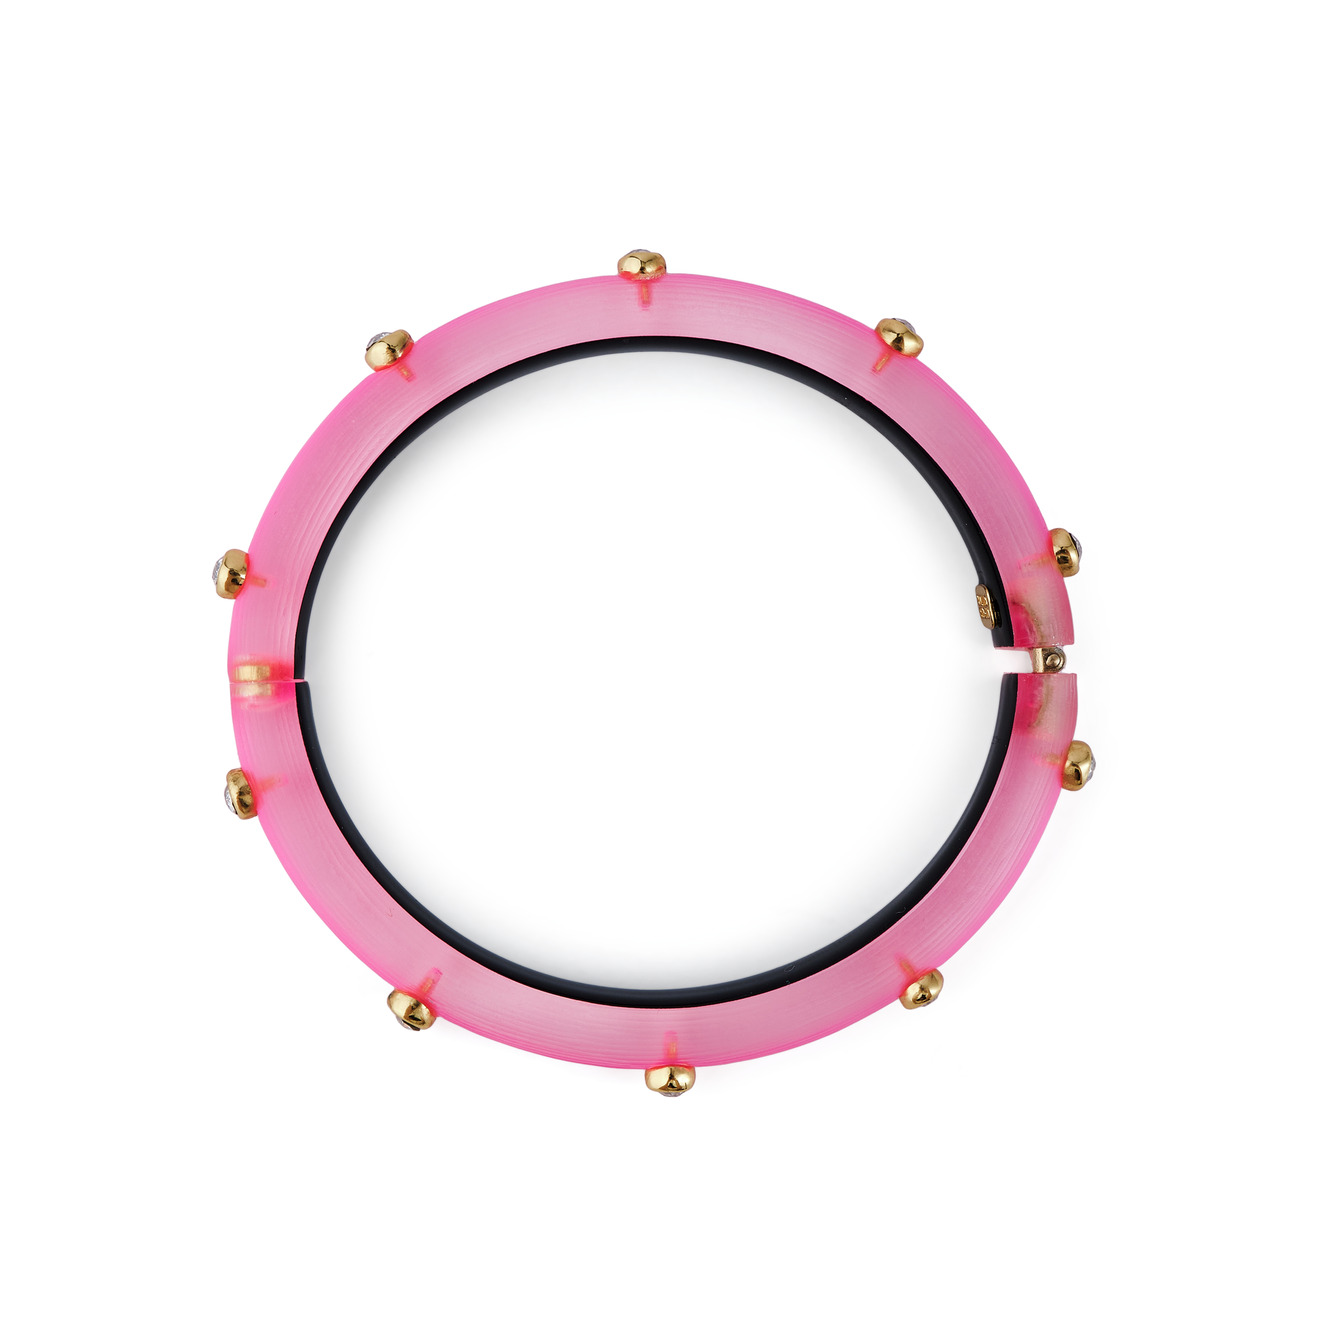 Alexis Bittar Тонкий ярко-розовый браслет из люцита с кристаллами mya bay тонкий позолоченный браслет с кристаллами little sultana